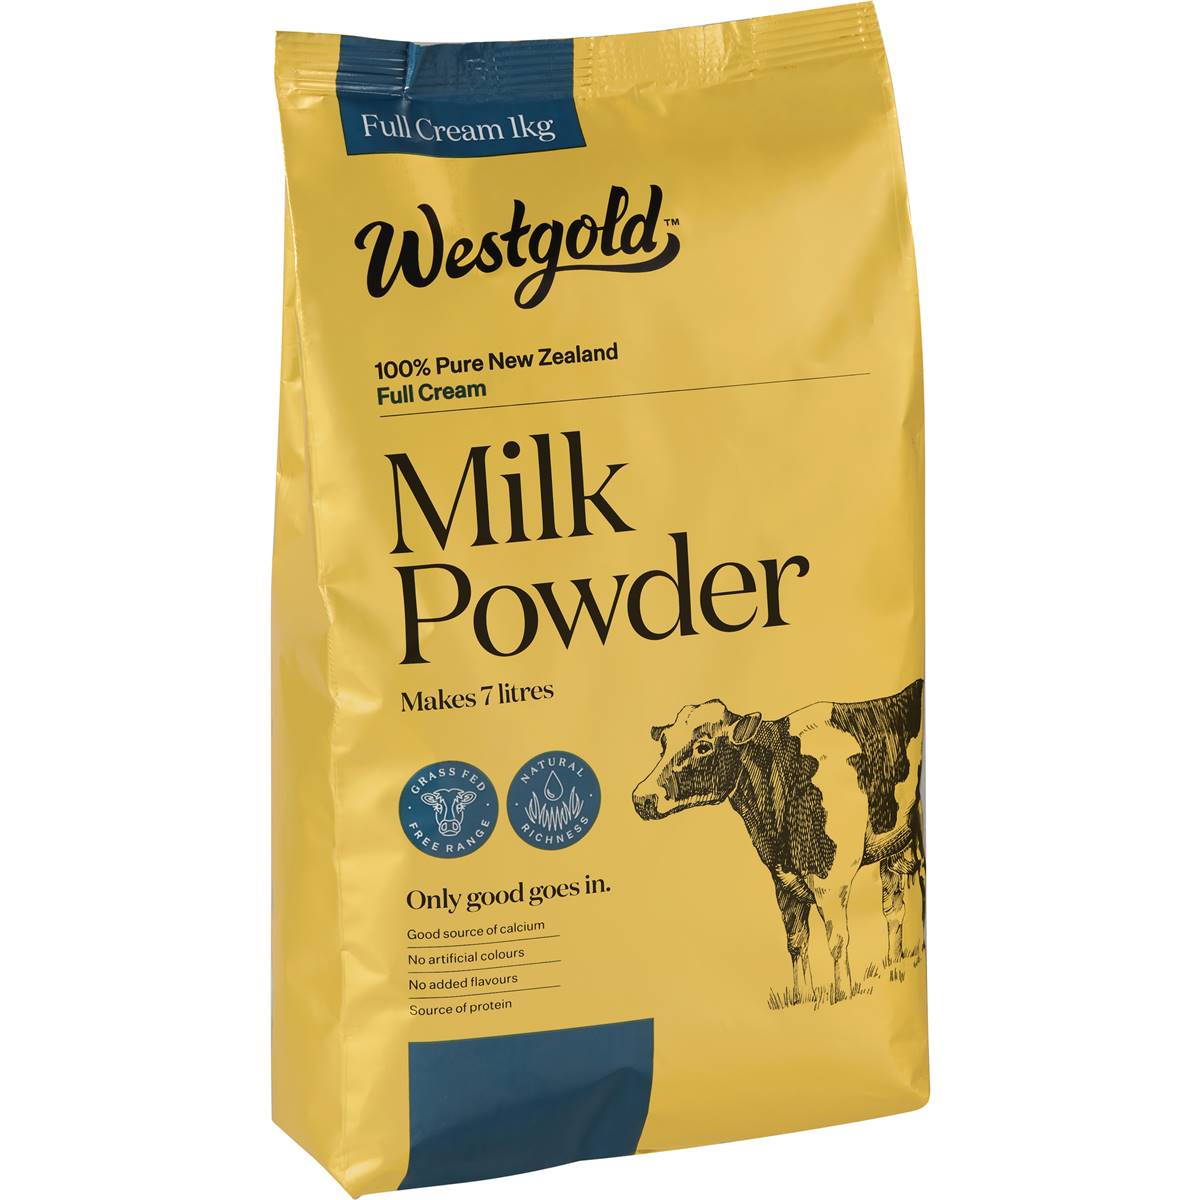 Calories in Westgold Full Cream Milk Powder